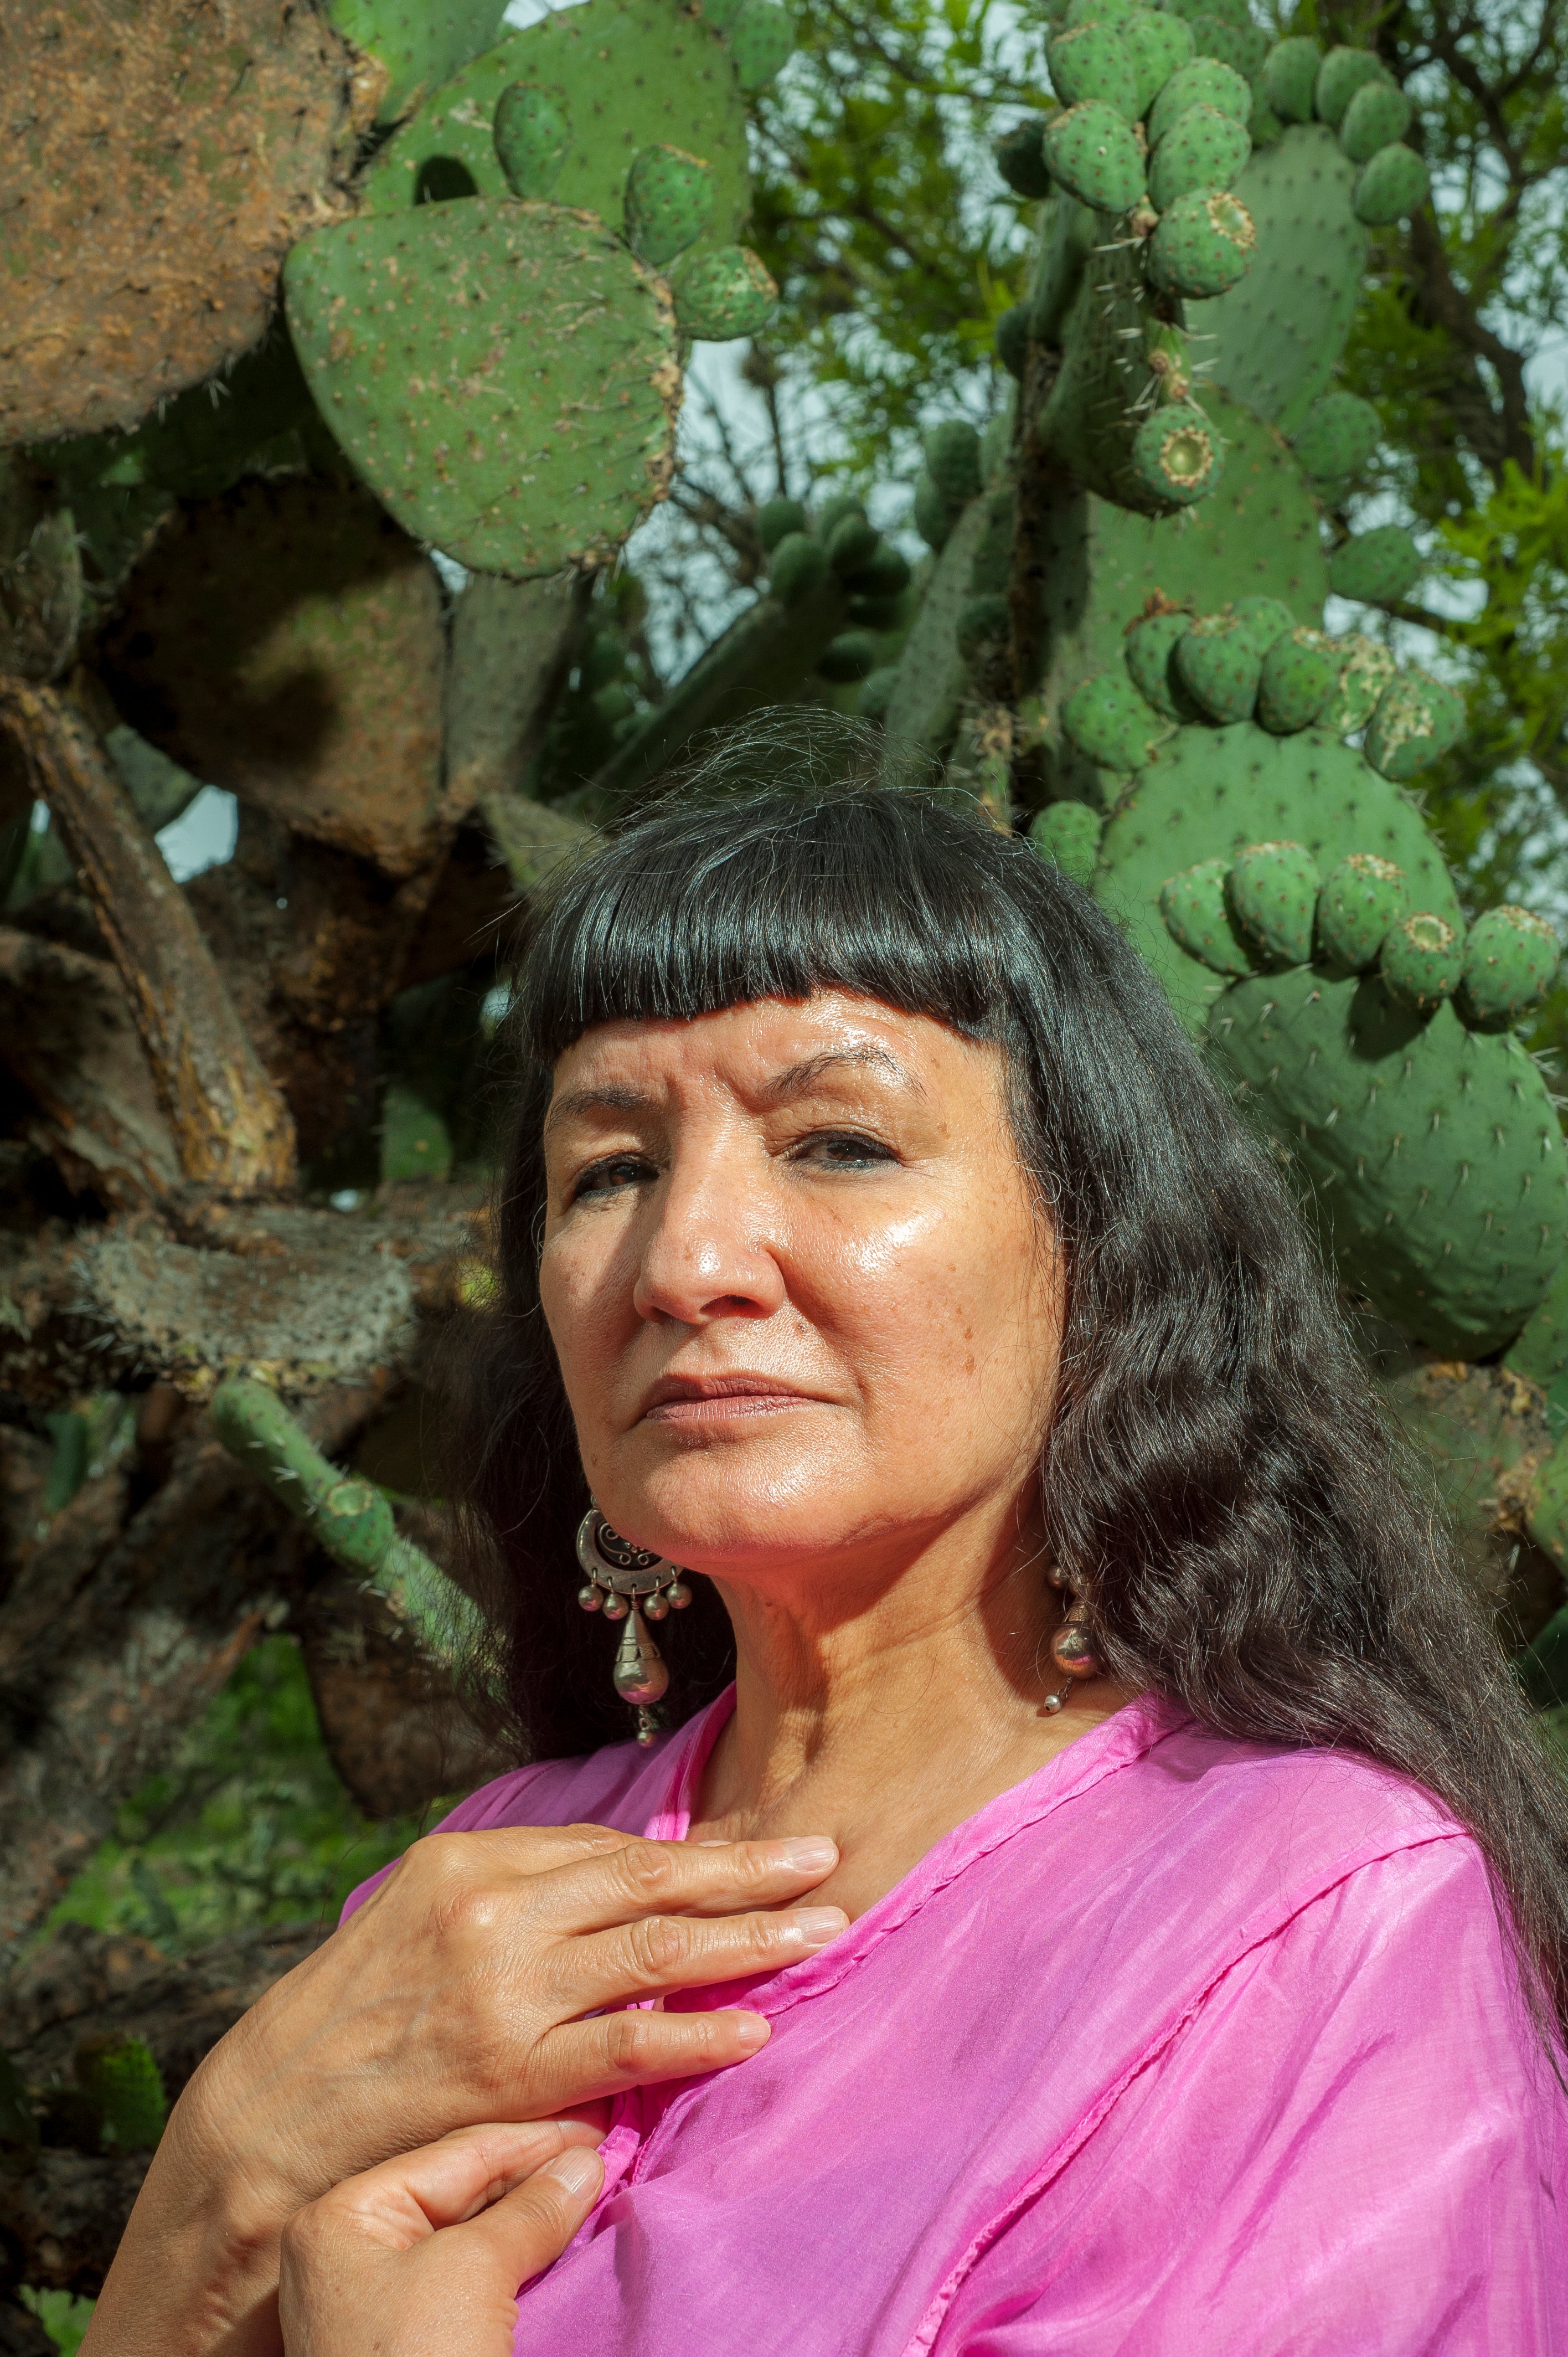 Retrato en exterior durante una sesión fotográfica de la poeta Sandra Cisneros en y alrededor de la localidad de San Miguel de Allende, Guanajuato, México